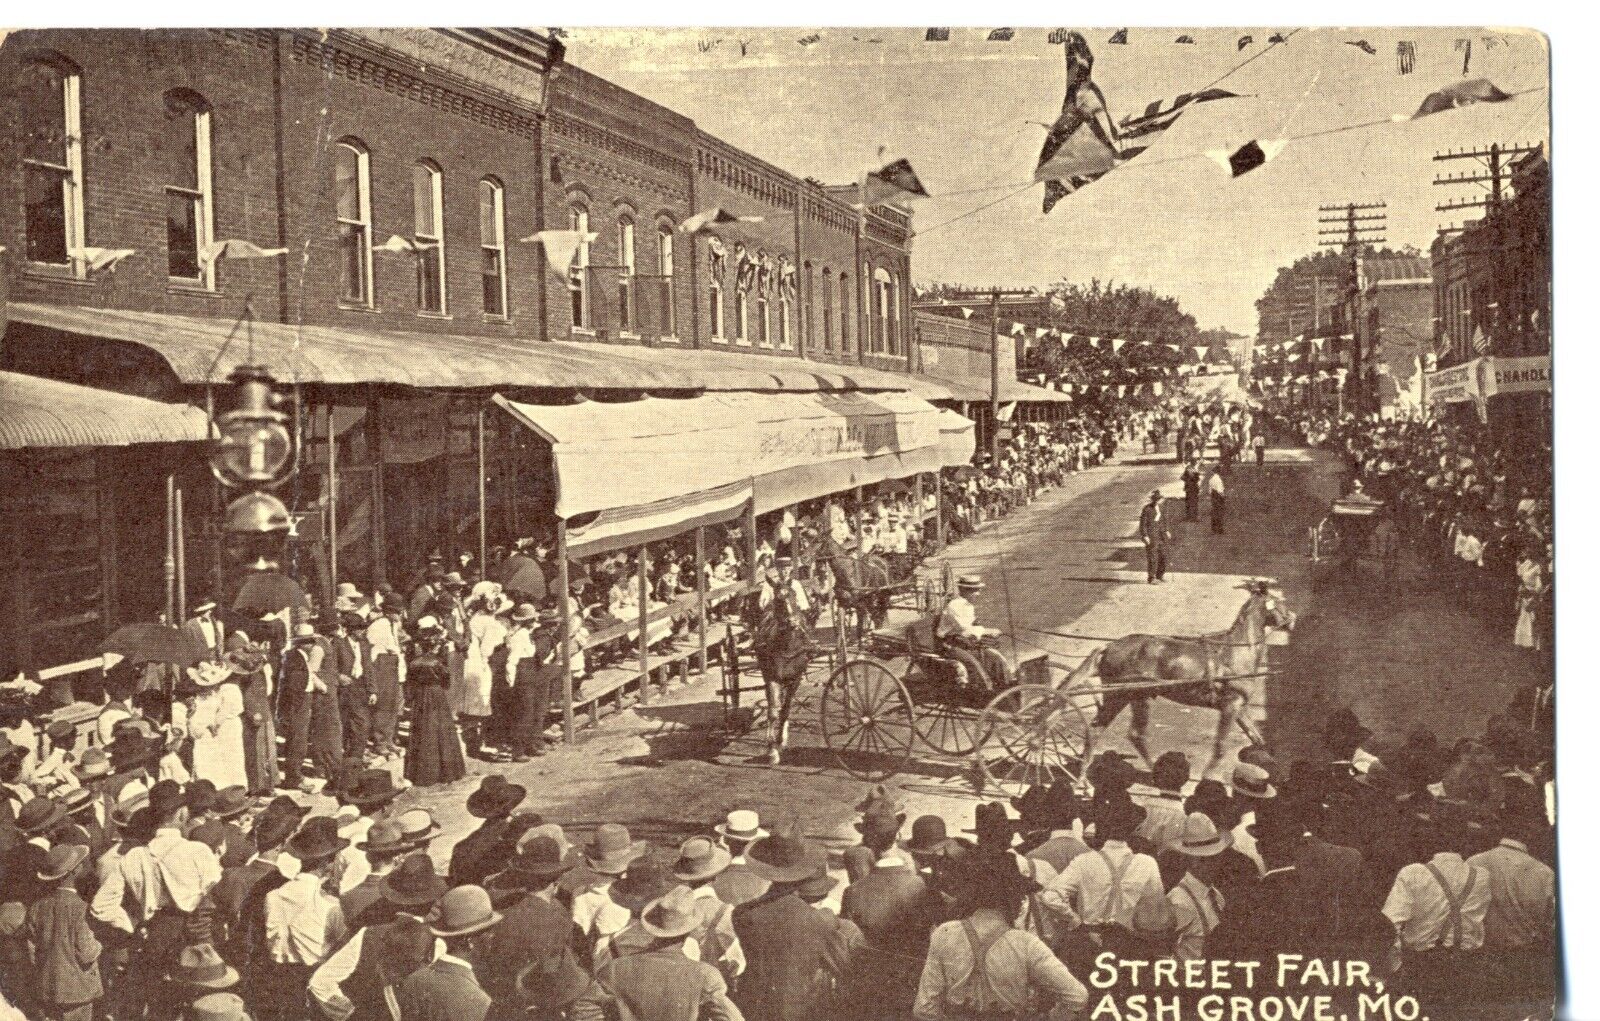 Street Fair, Ash Grove, Mo. Missouri Postcard. Near Springfield